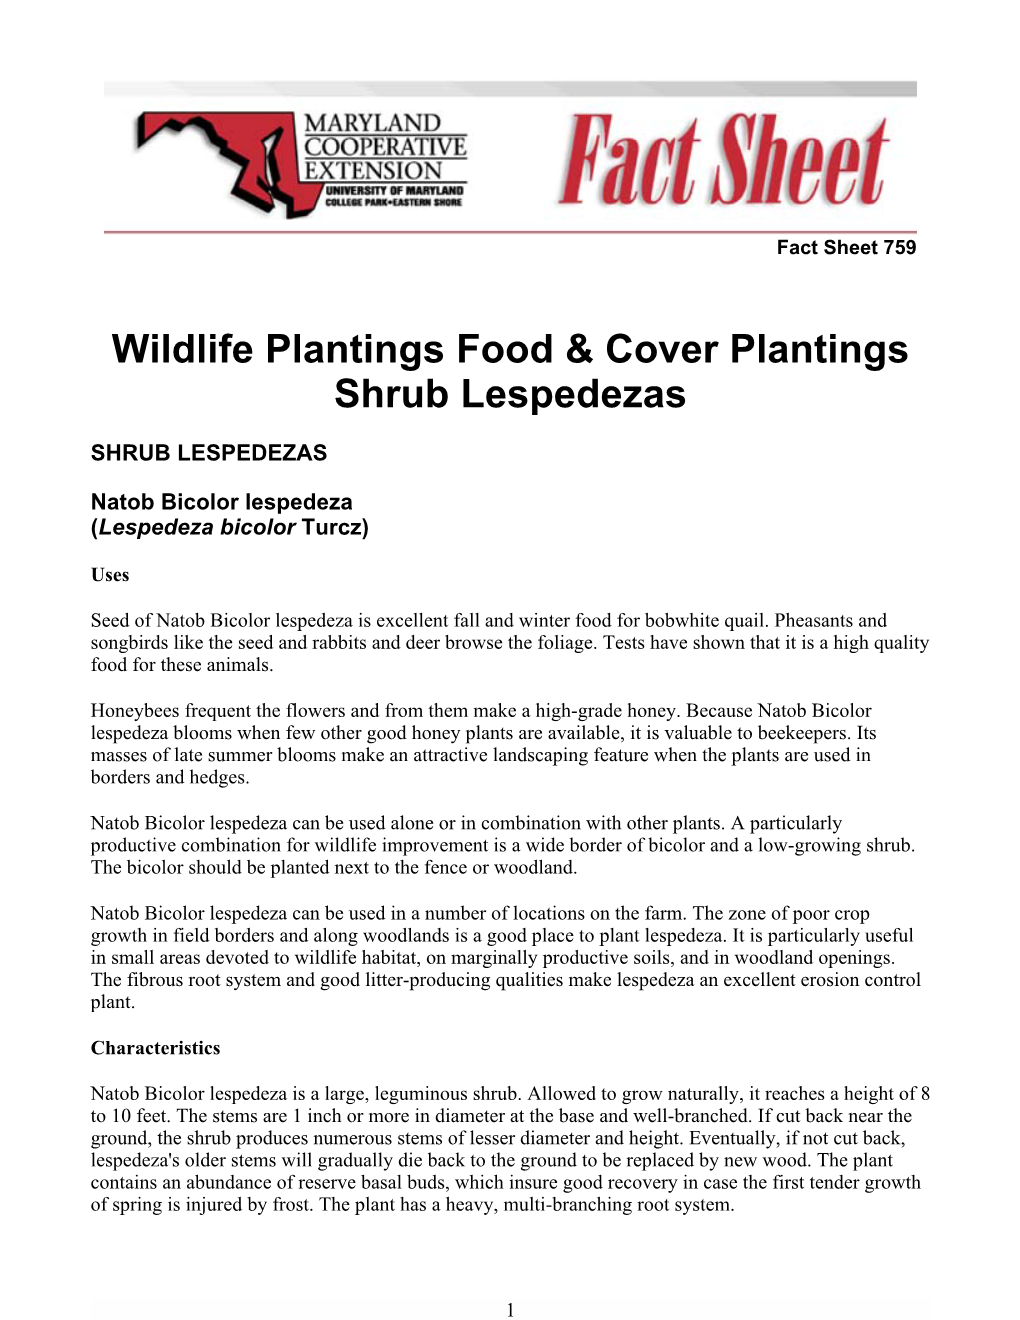 Wildlife Plantings Food & Cover Plantings Shrub Lespedezas